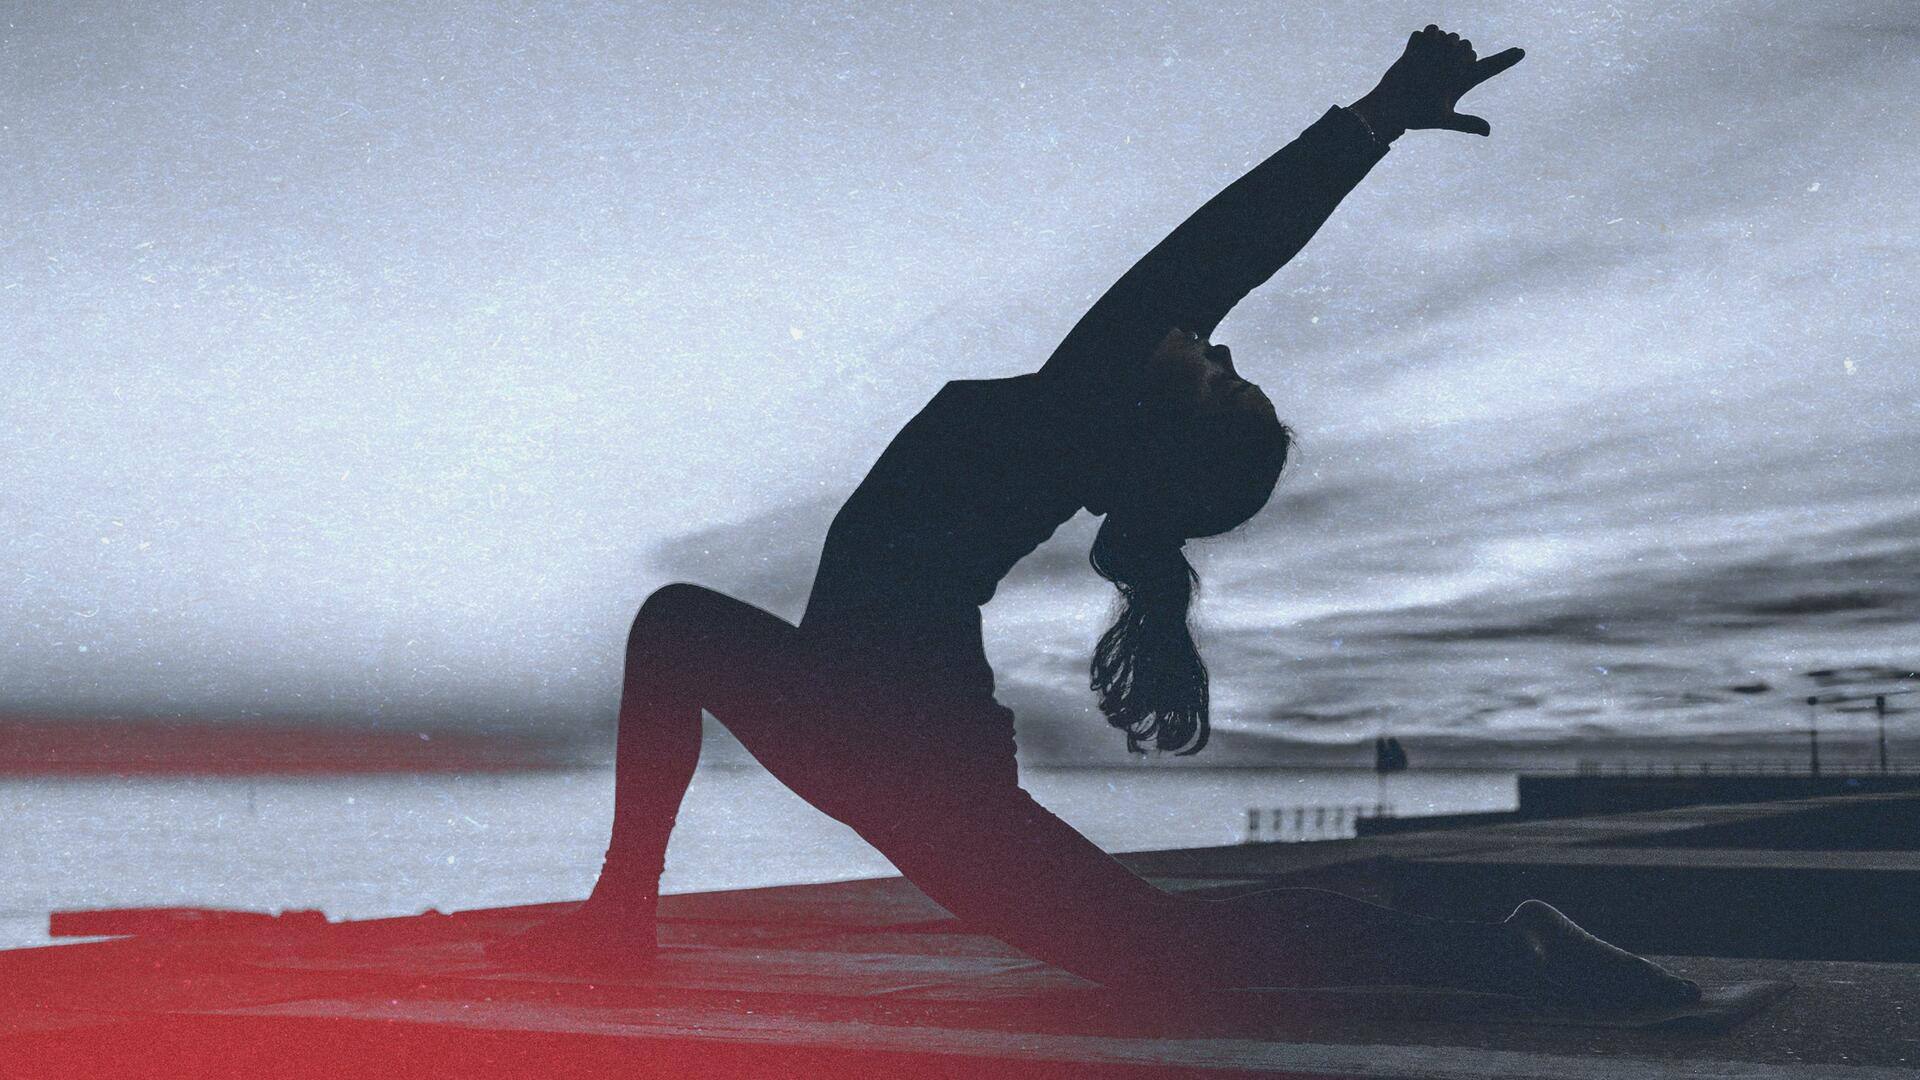 प्रजनन क्षमता बढ़ाने के लिए फायदेमंद हैं ये 5 योगासन, जानिए अभ्यास करने का सही तरीका